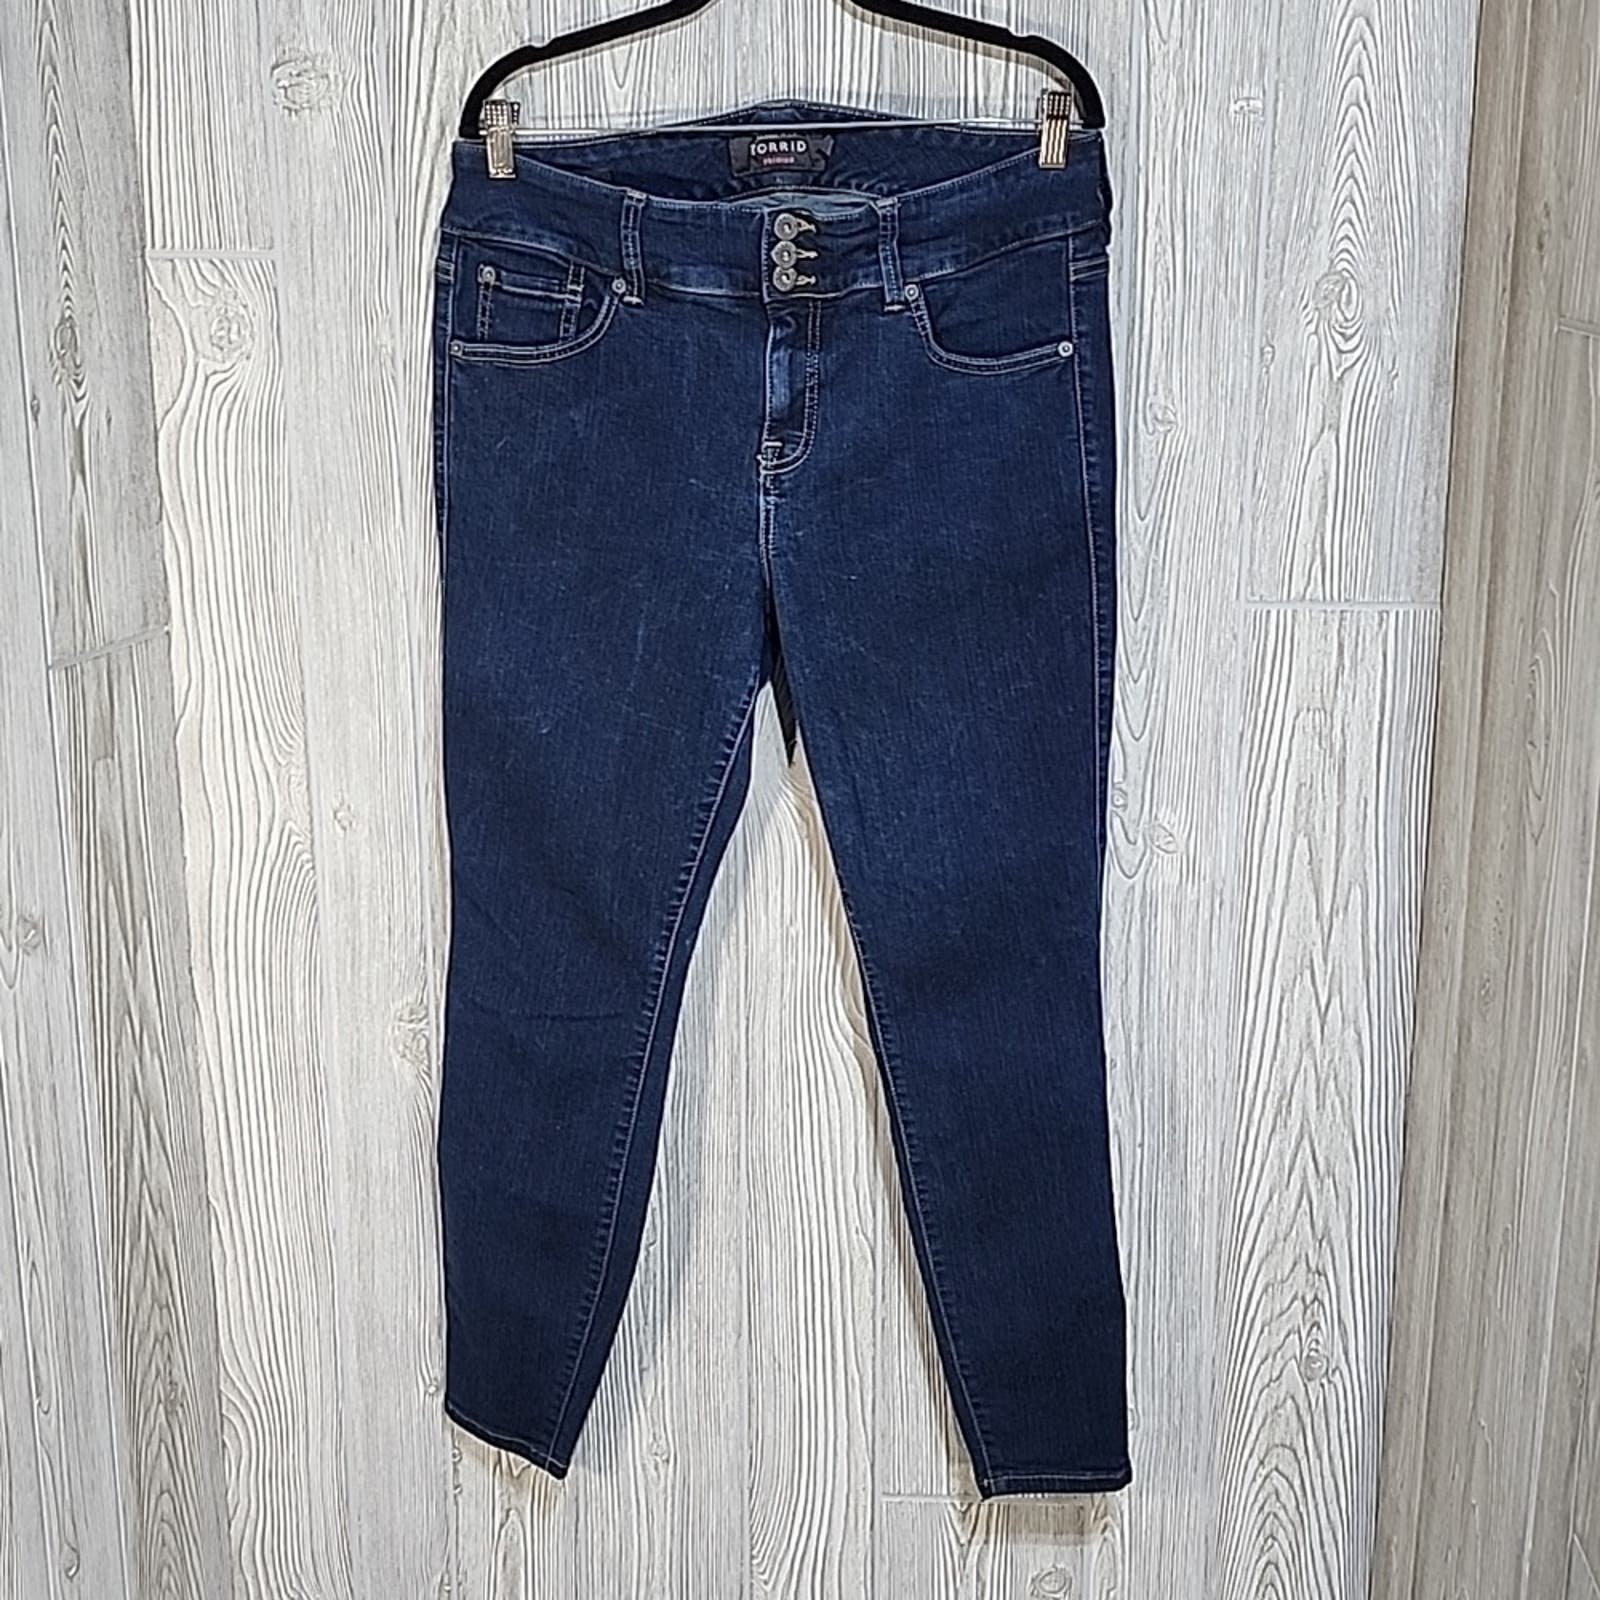 high discount Torrid Jegging Dark Wash Jeans, Women´s Plus Size 16R OVfnZbb5g Online Shop